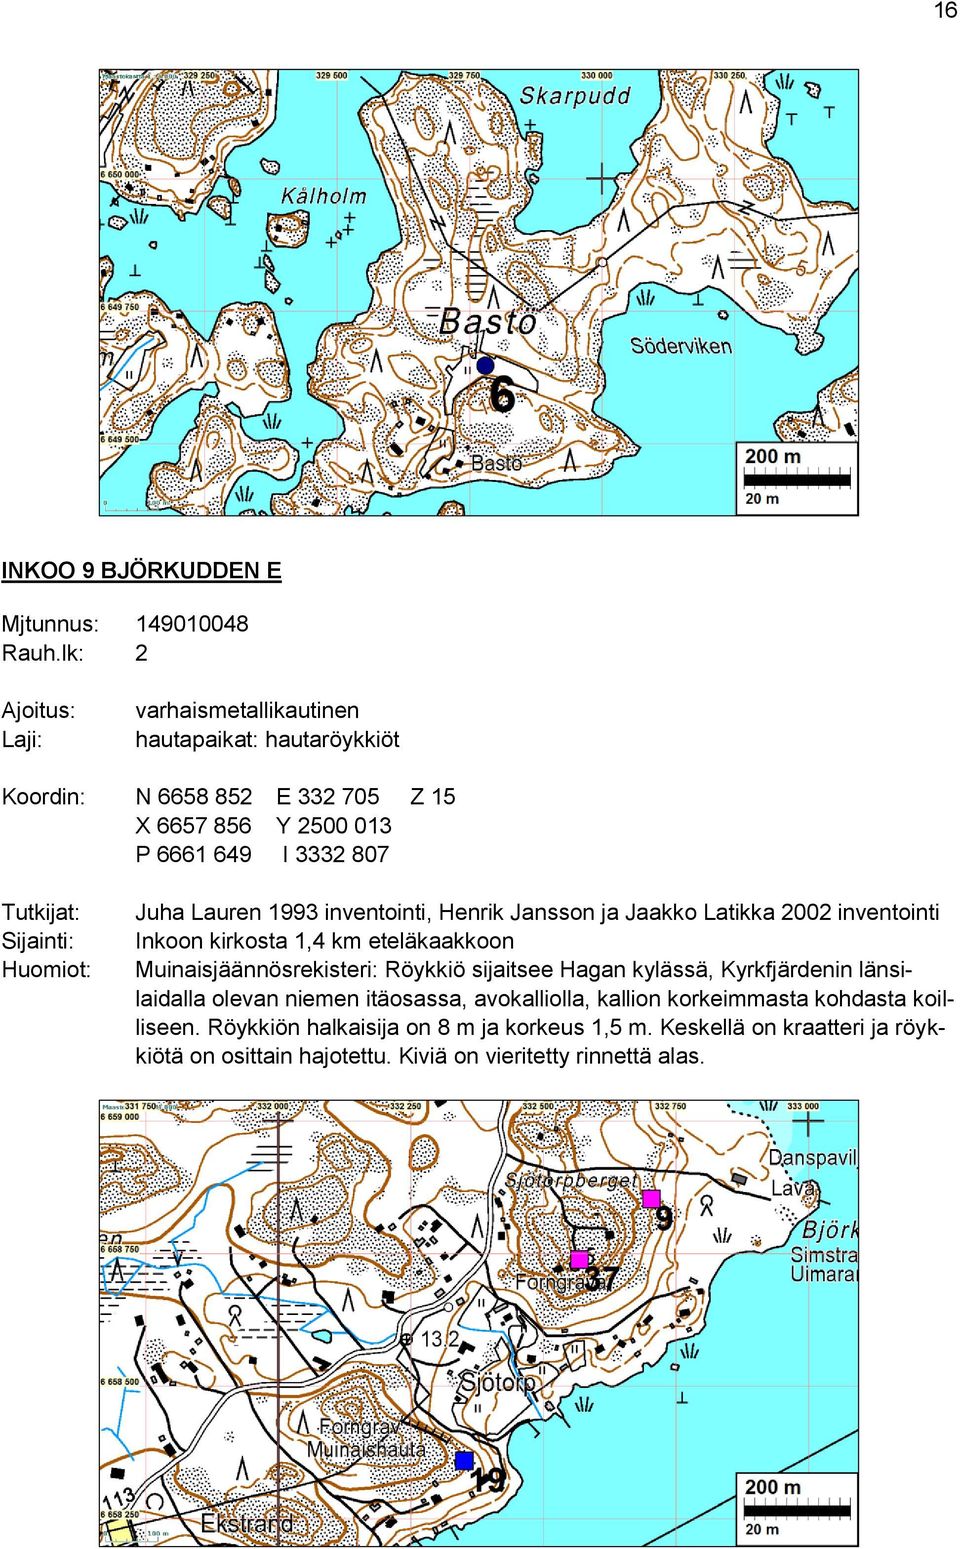 eteläkaakkoon Muinaisjäännösrekisteri: Röykkiö sijaitsee Hagan kylässä, Kyrkfjärdenin länsilaidalla olevan niemen itäosassa, avokalliolla, kallion